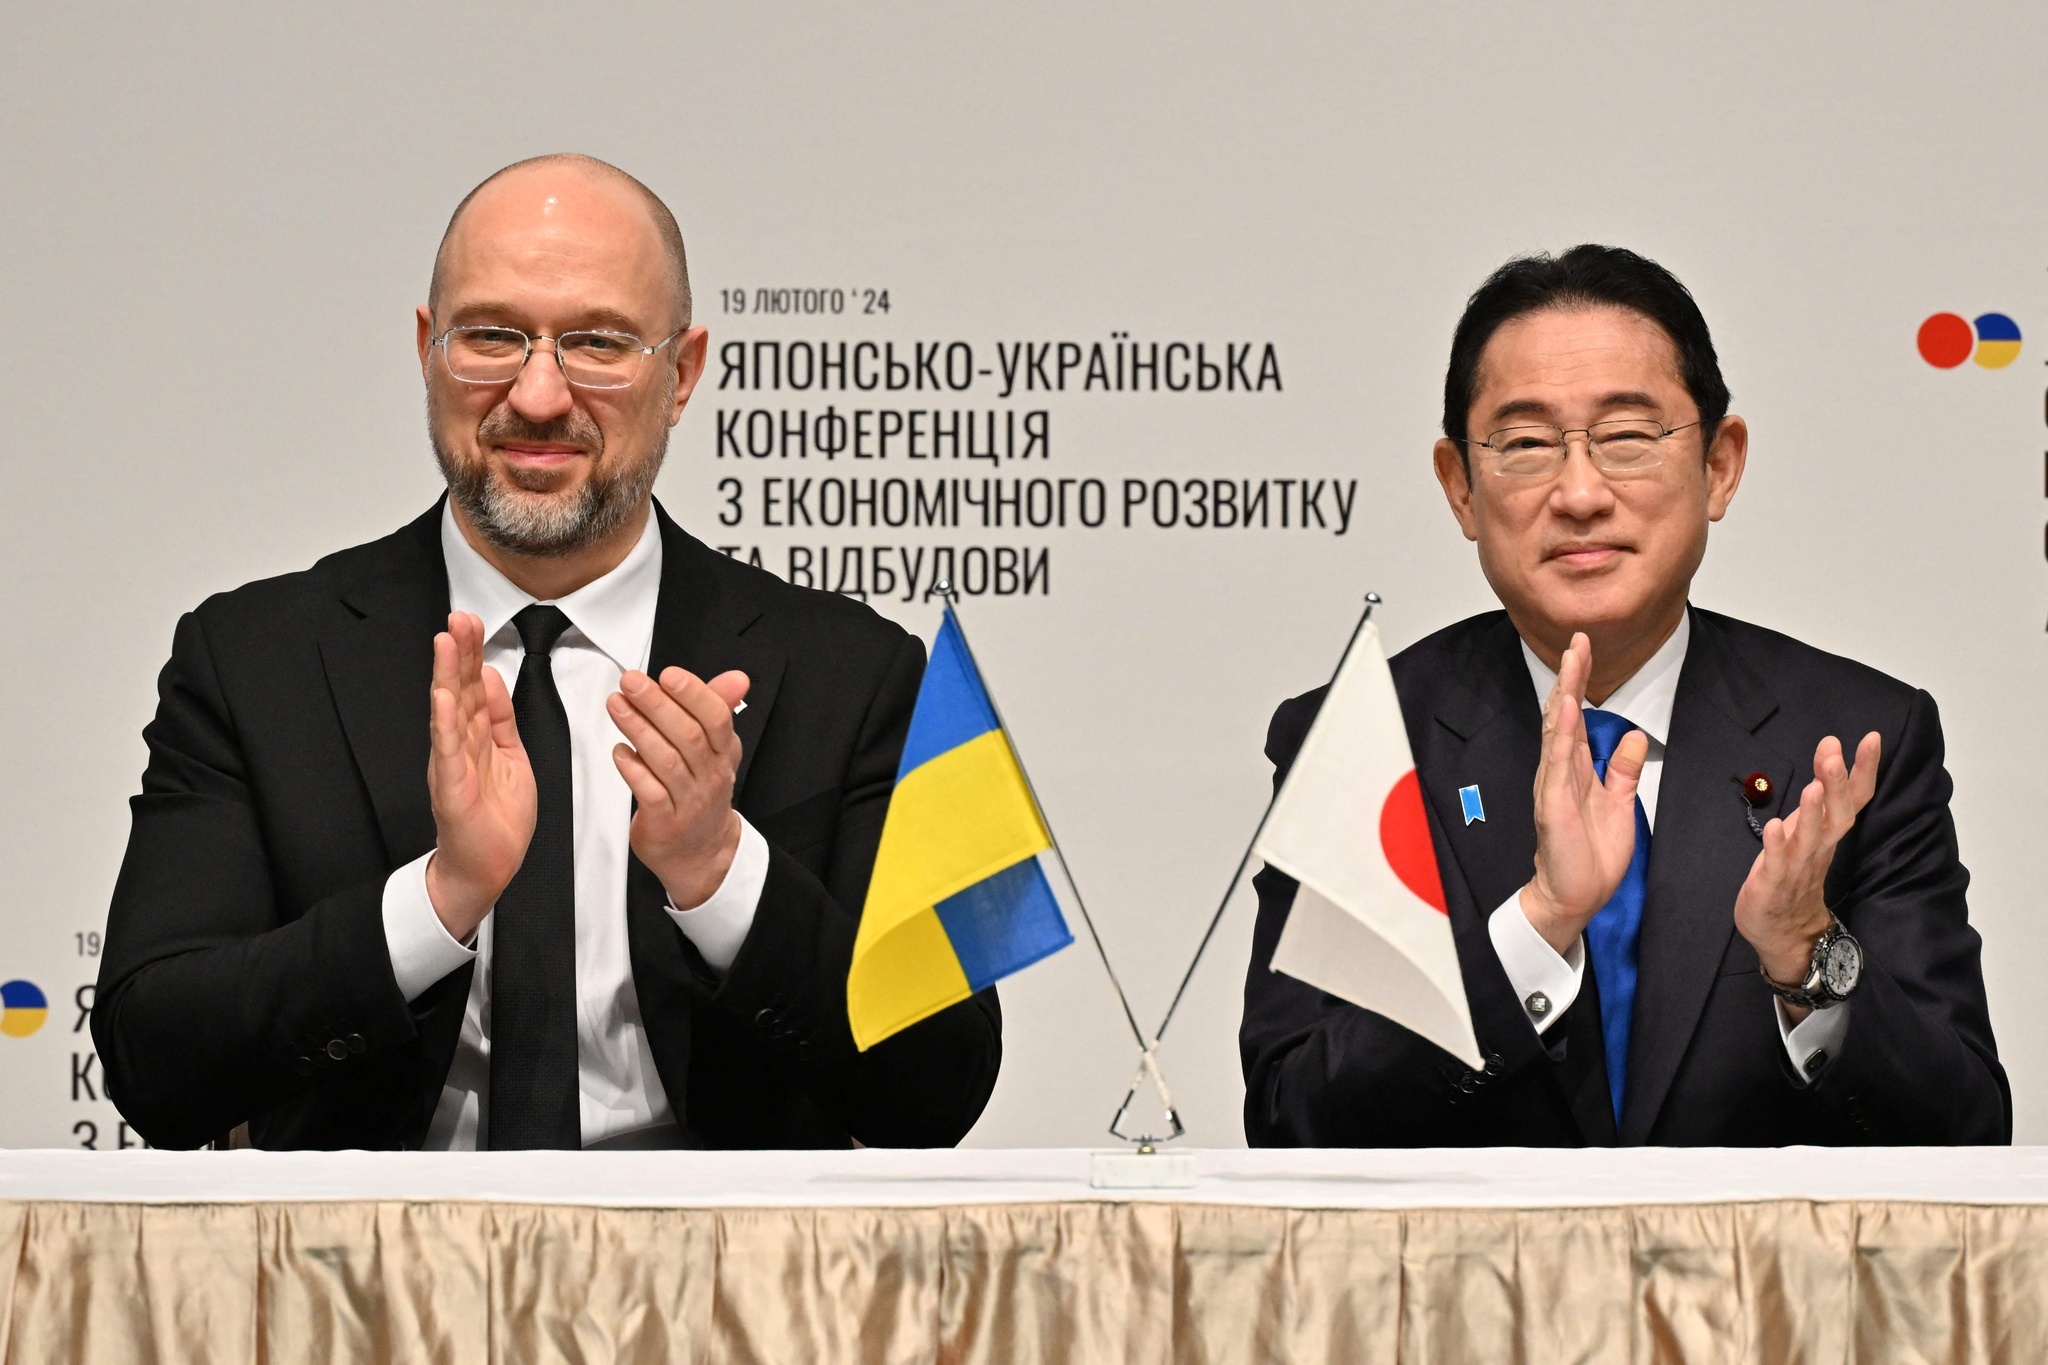 日・ウクライナ経済復興推進会議 ウクライナ首相が復興協力要請